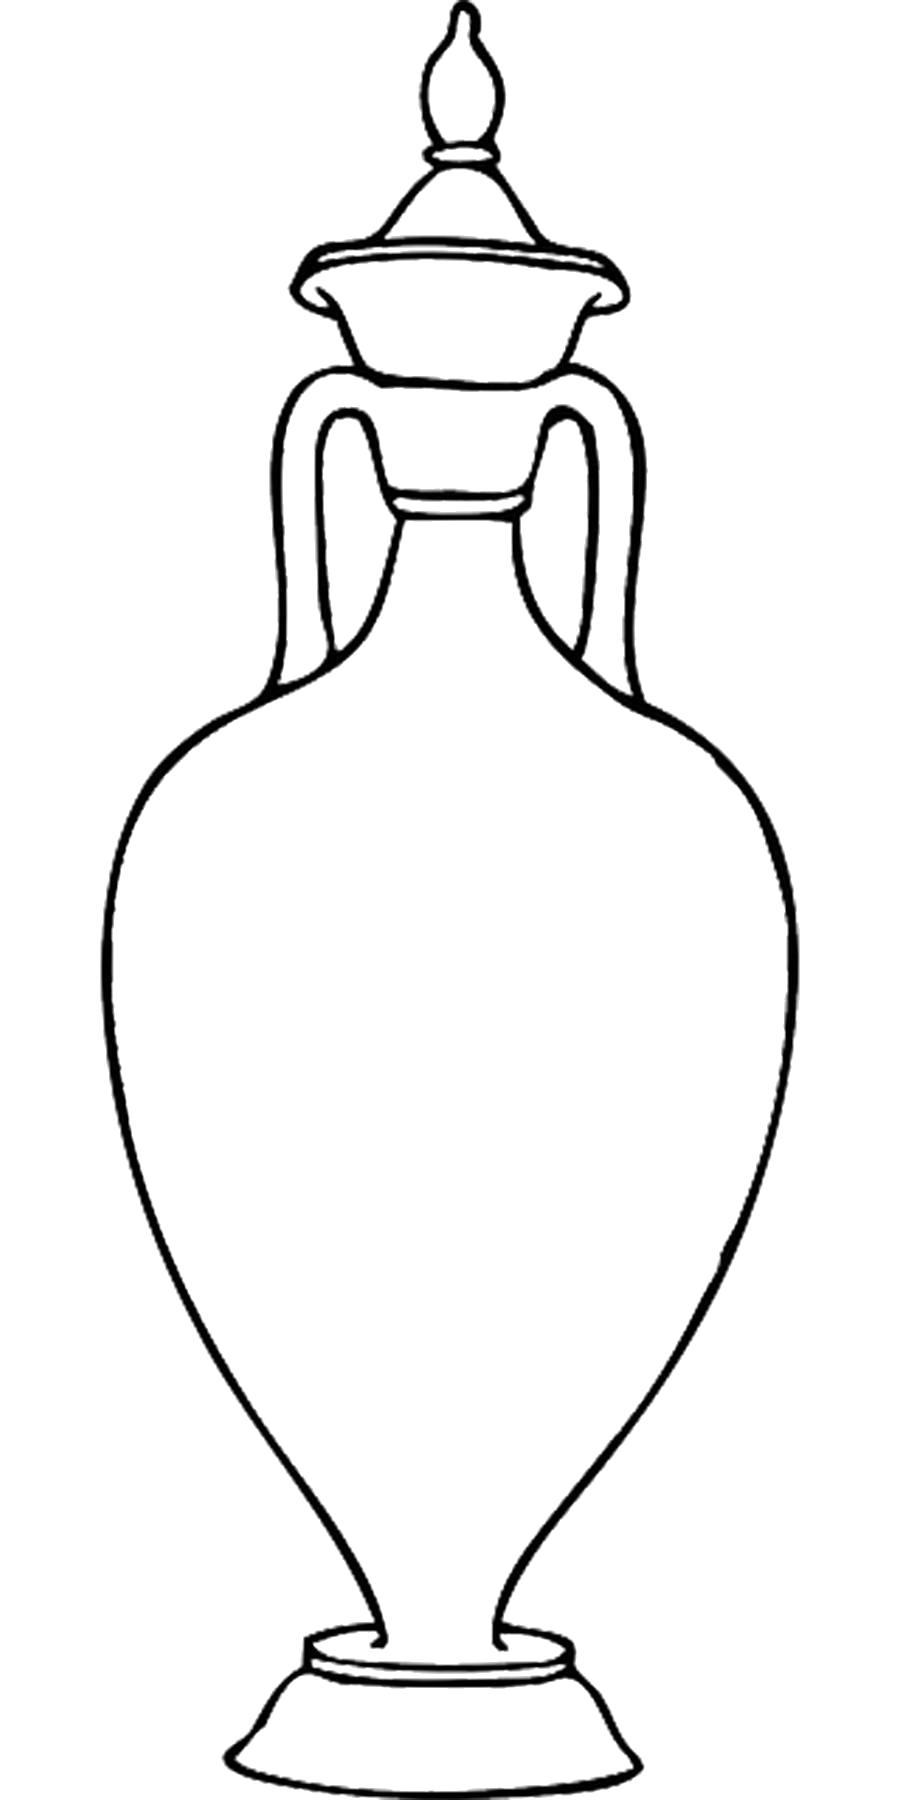 Название: Раскраска Раскраски шаблон вазы ваза с крышкой контур для вырезания из бумаги. Категория: Шаблон. Теги: Шаблон.